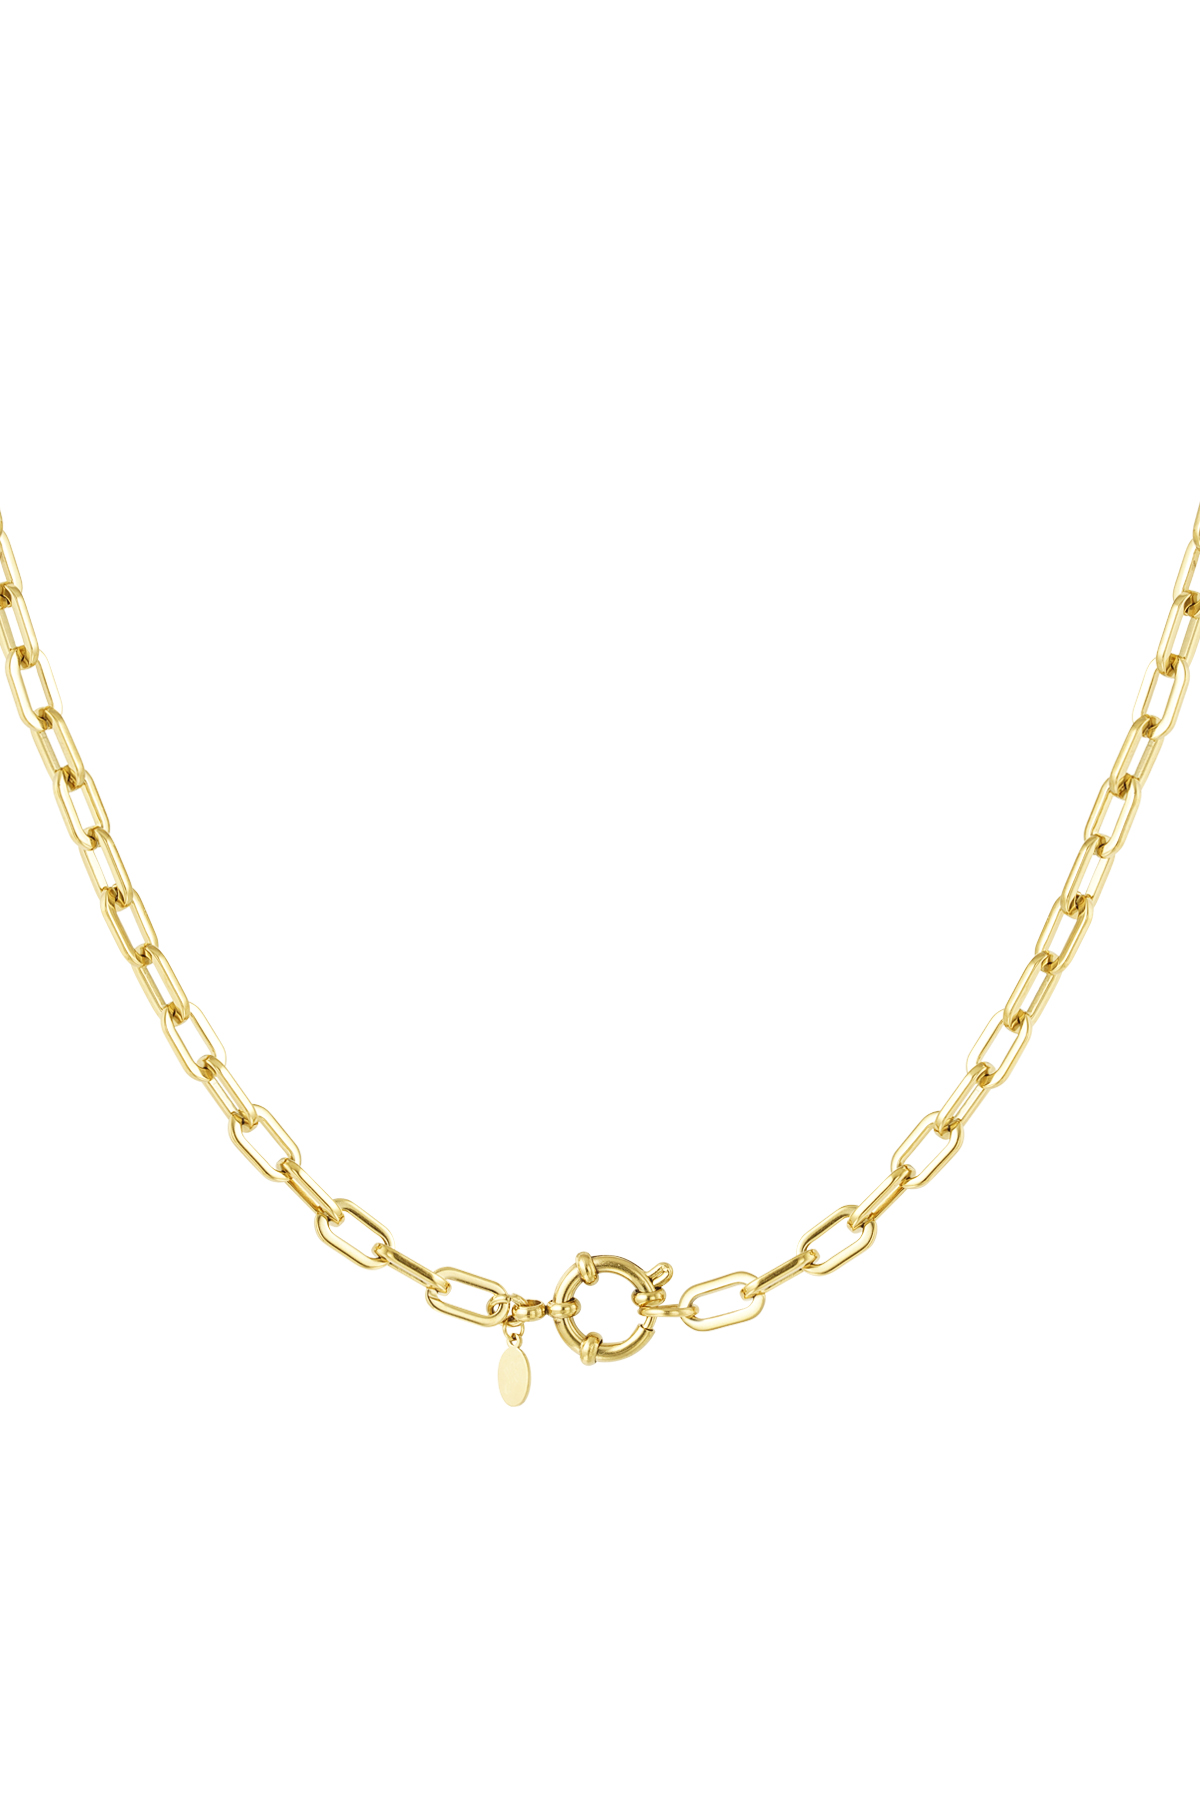 Halskette mit einfachen Gliedern und rundem Verschluss – Gold